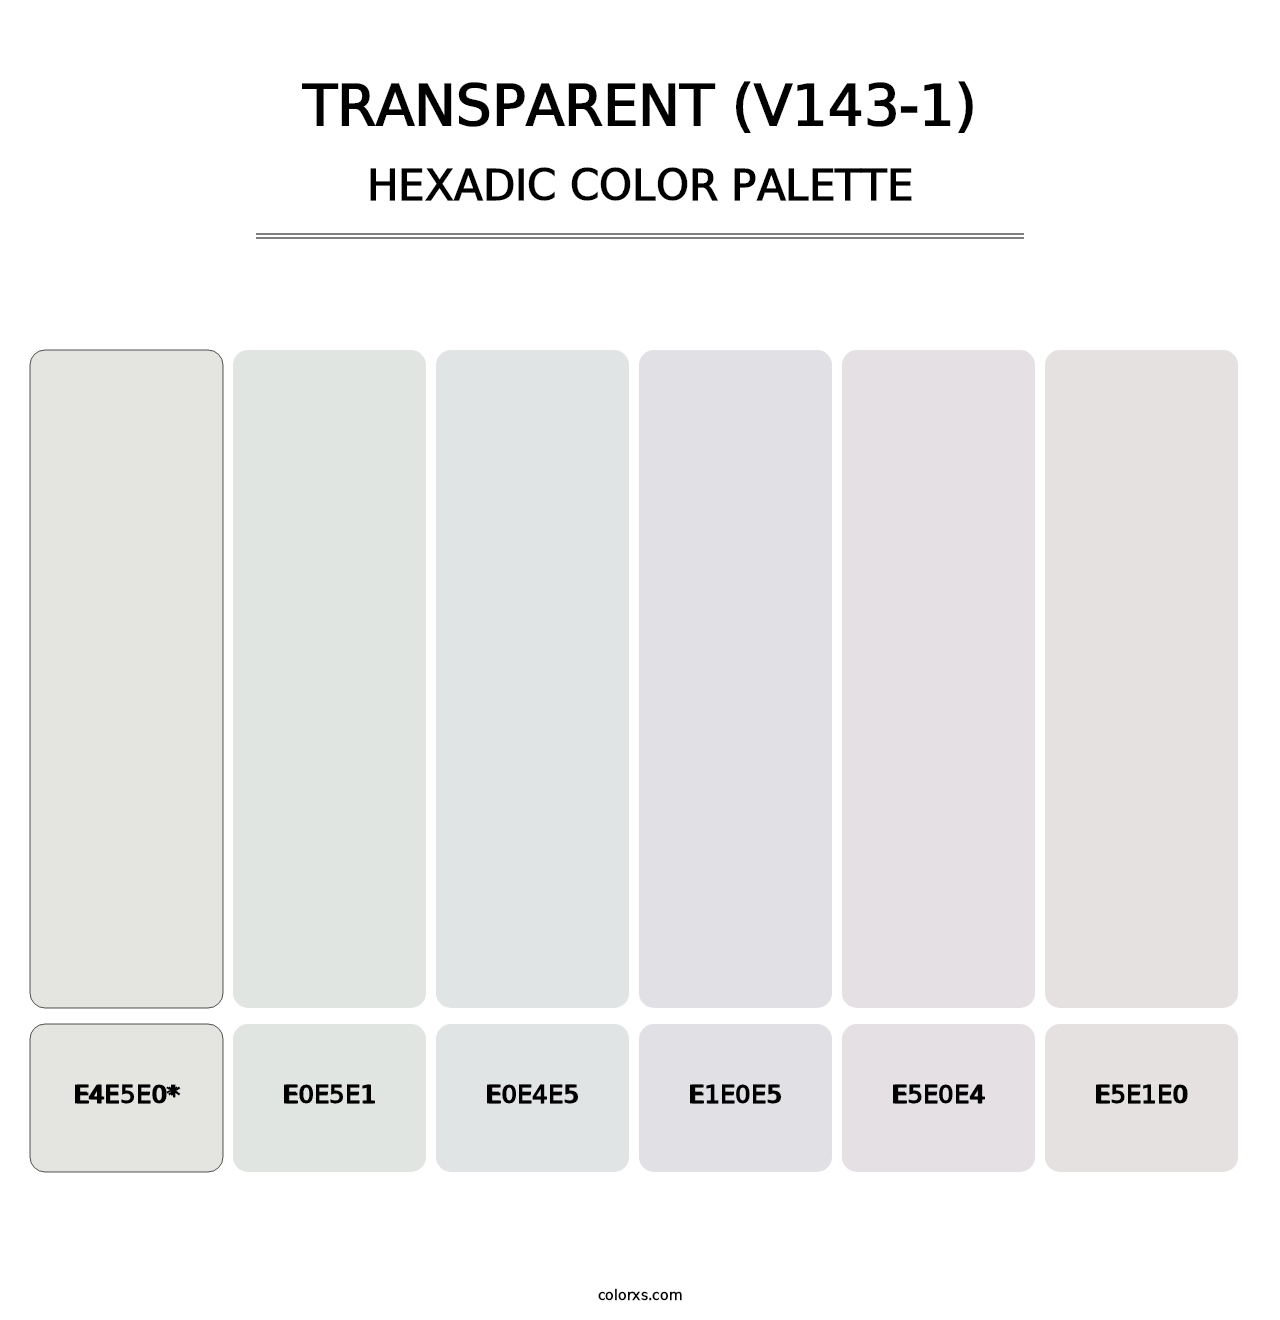 Transparent (V143-1) - Hexadic Color Palette